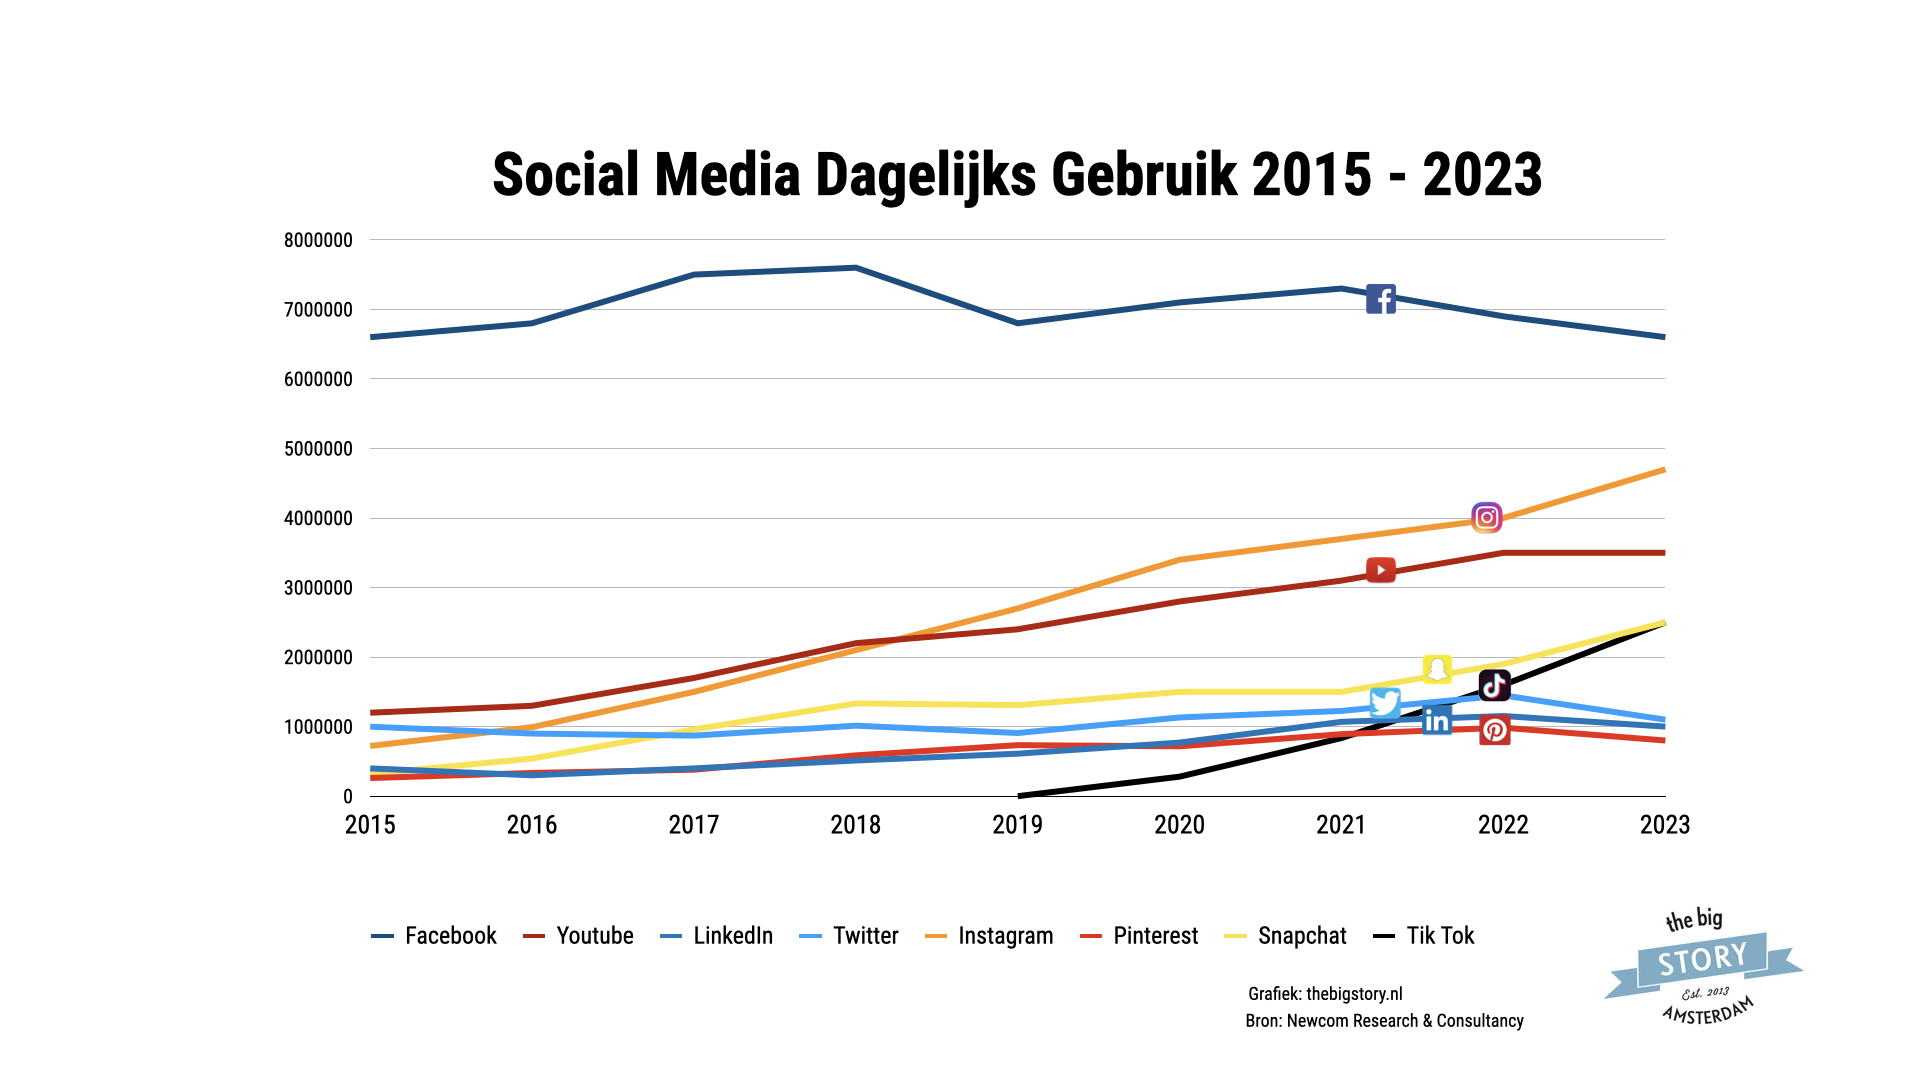 Dagelijks social media gebruik in Nederland stijgt. Vooral Instagram, TikTok en Snapchat. Facebook en Twitter dalen in gebruik.